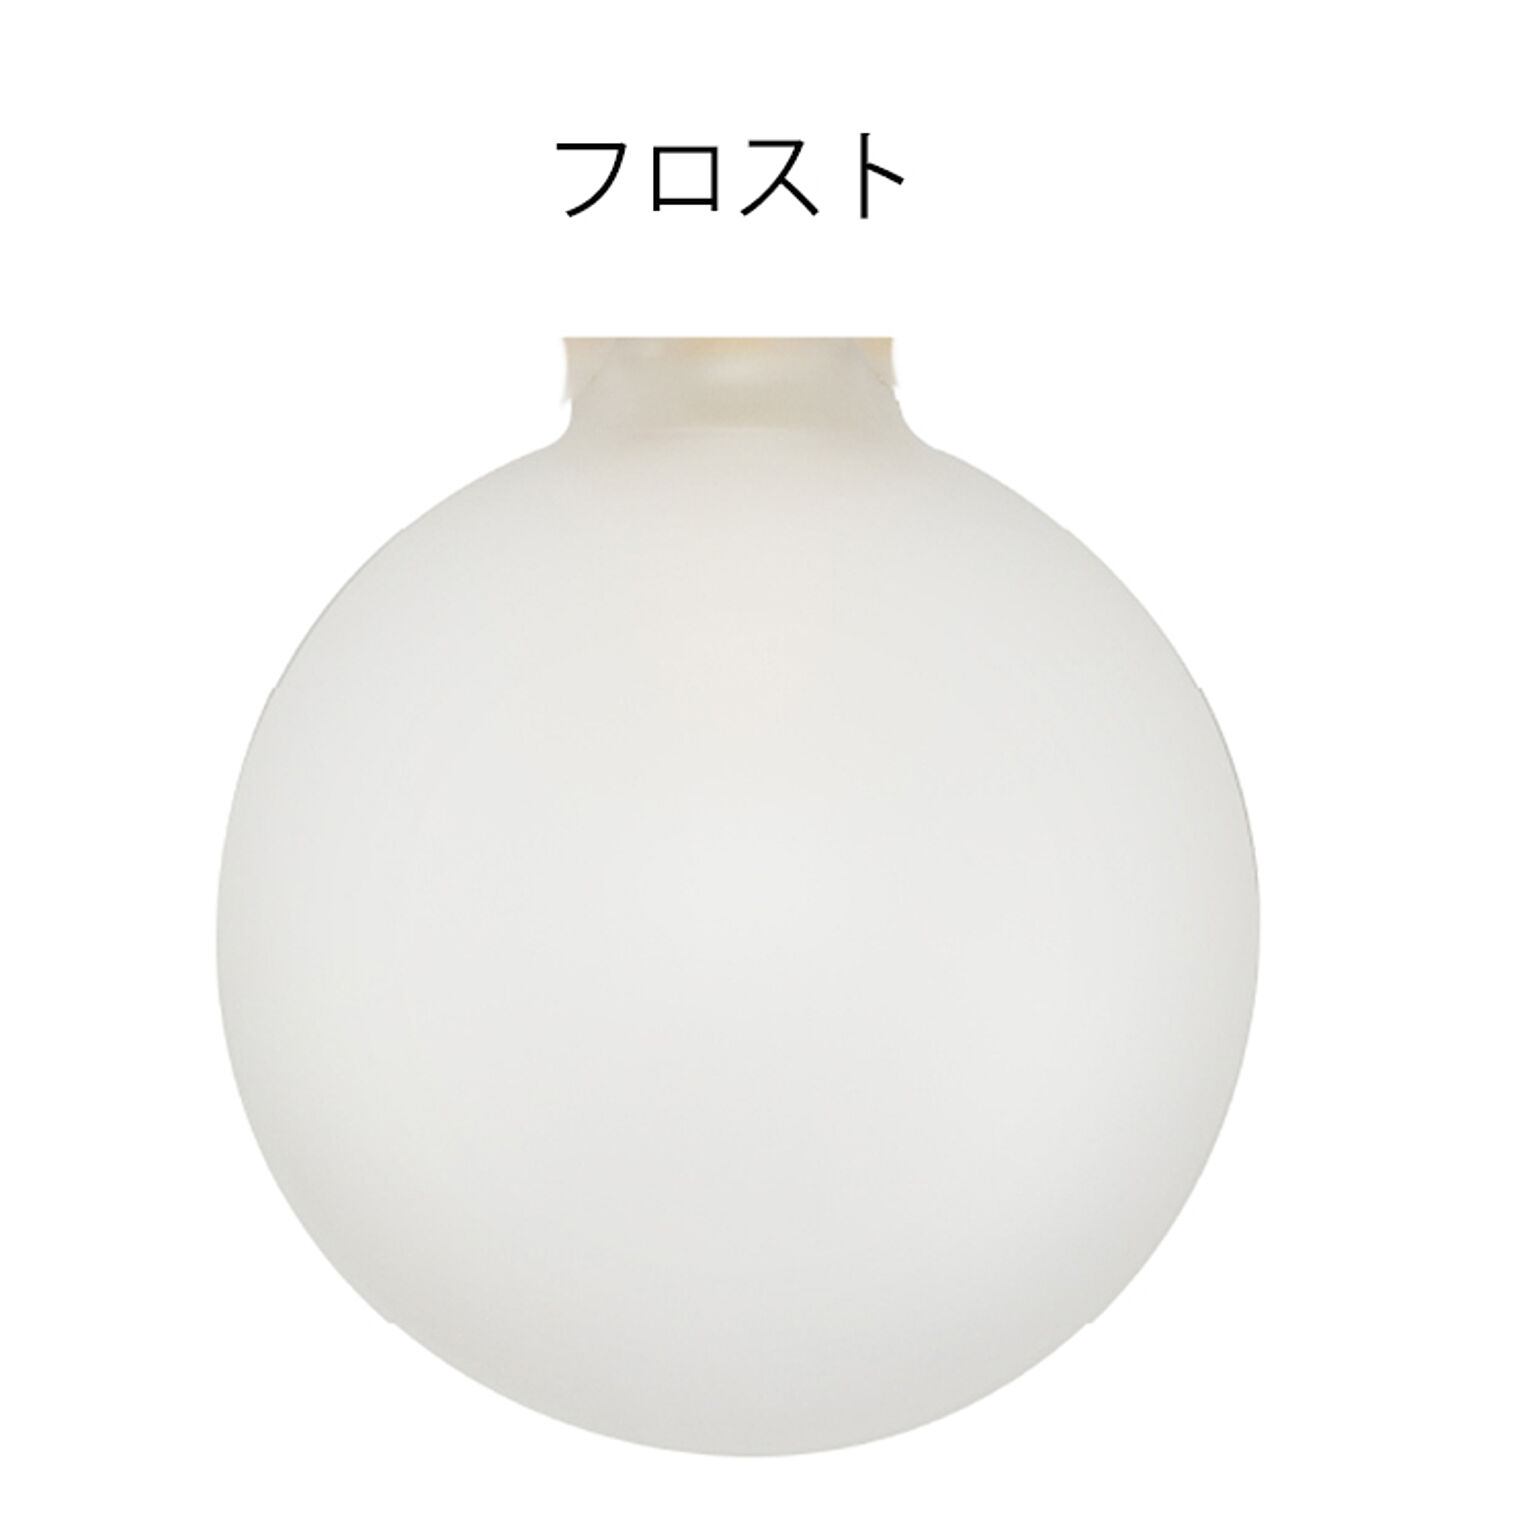 【単品】丸型 ガラスシェード ホワイト クリア バブル クラック アンバー HR130 光ノ屋照明